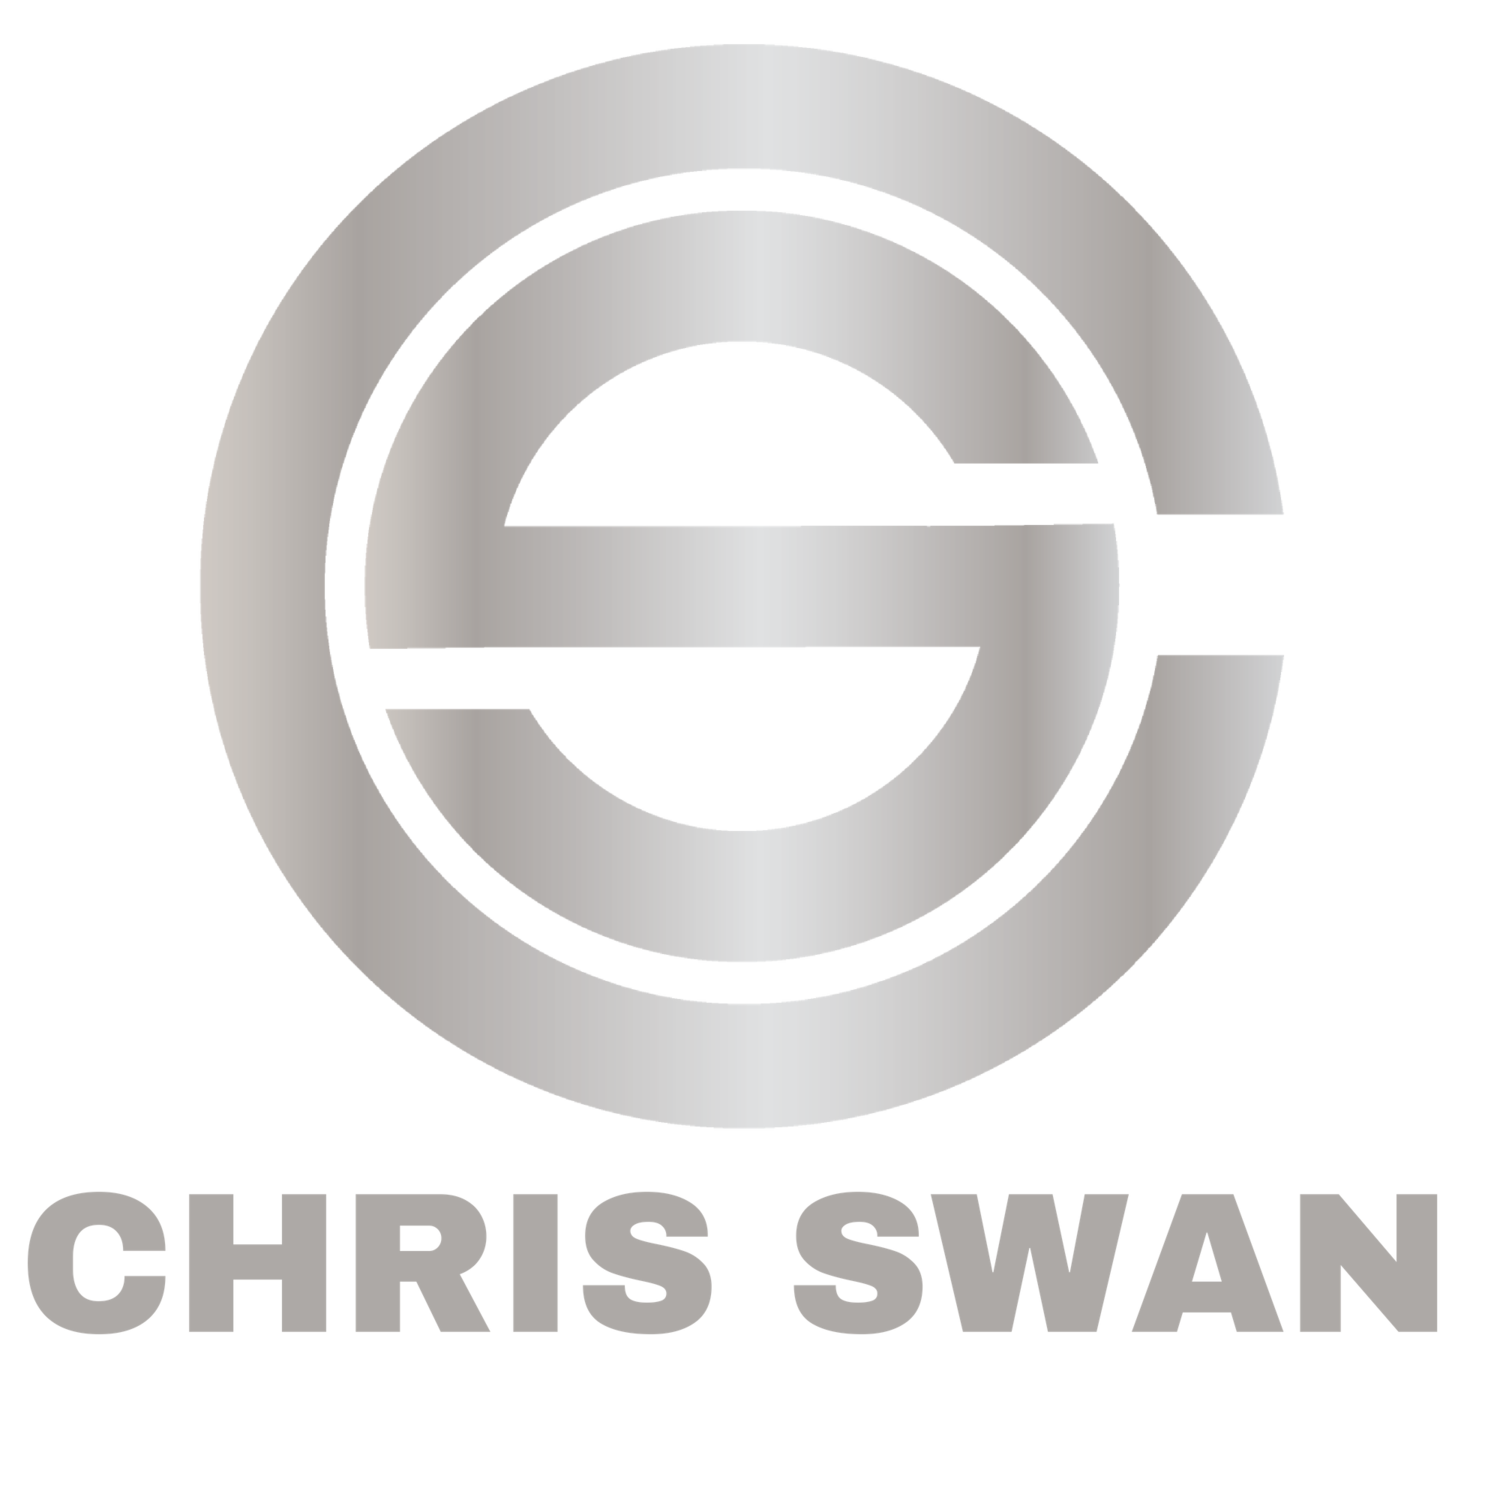 Chris Swan